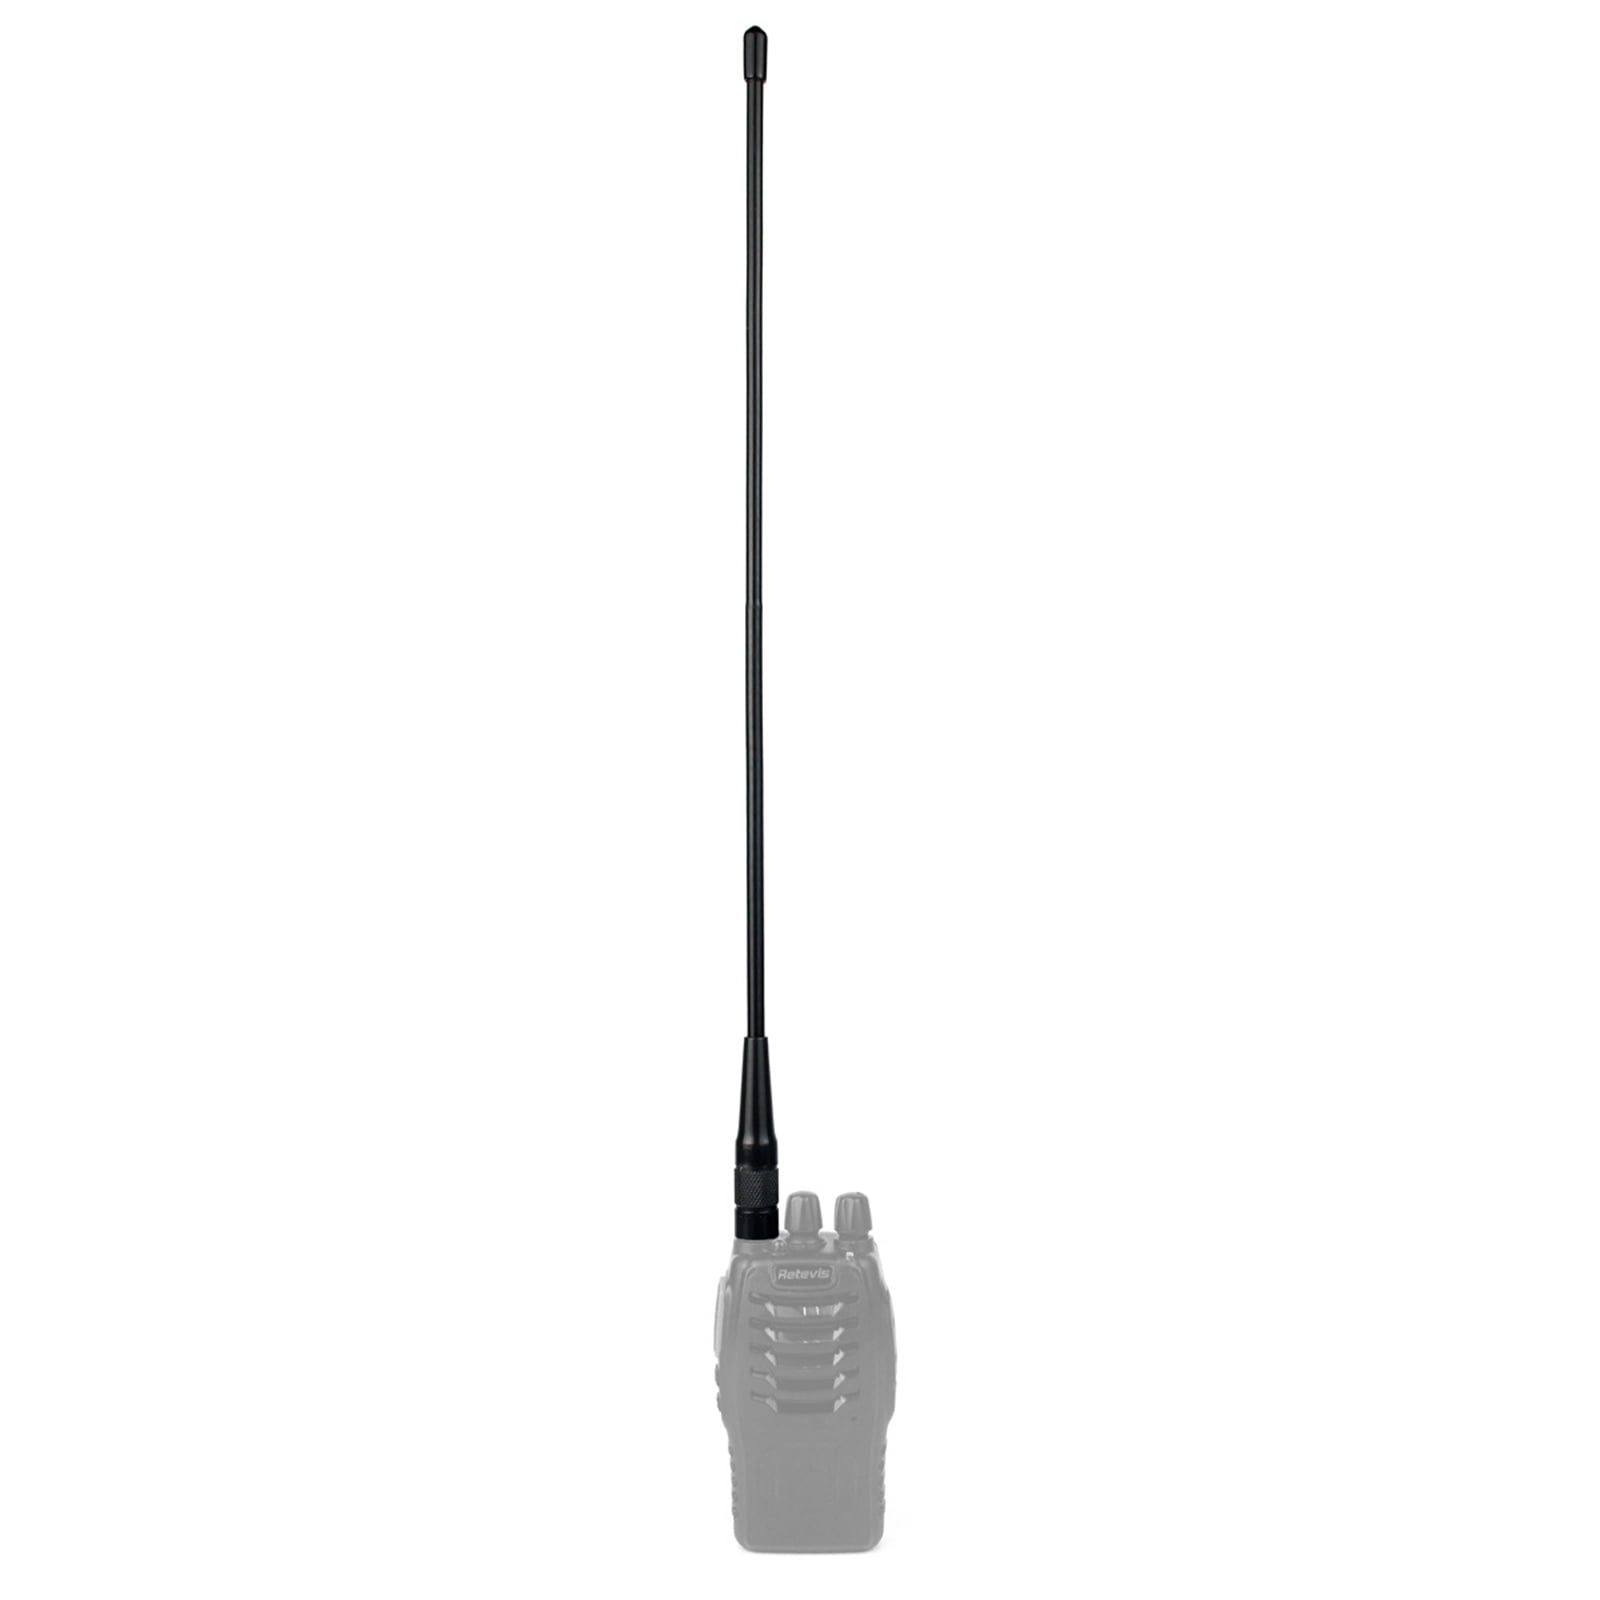 Retevis Dual Band Radio VHF/UHF SMA-M Antenna for YAESU VX UV-985 Walkie Talkie 